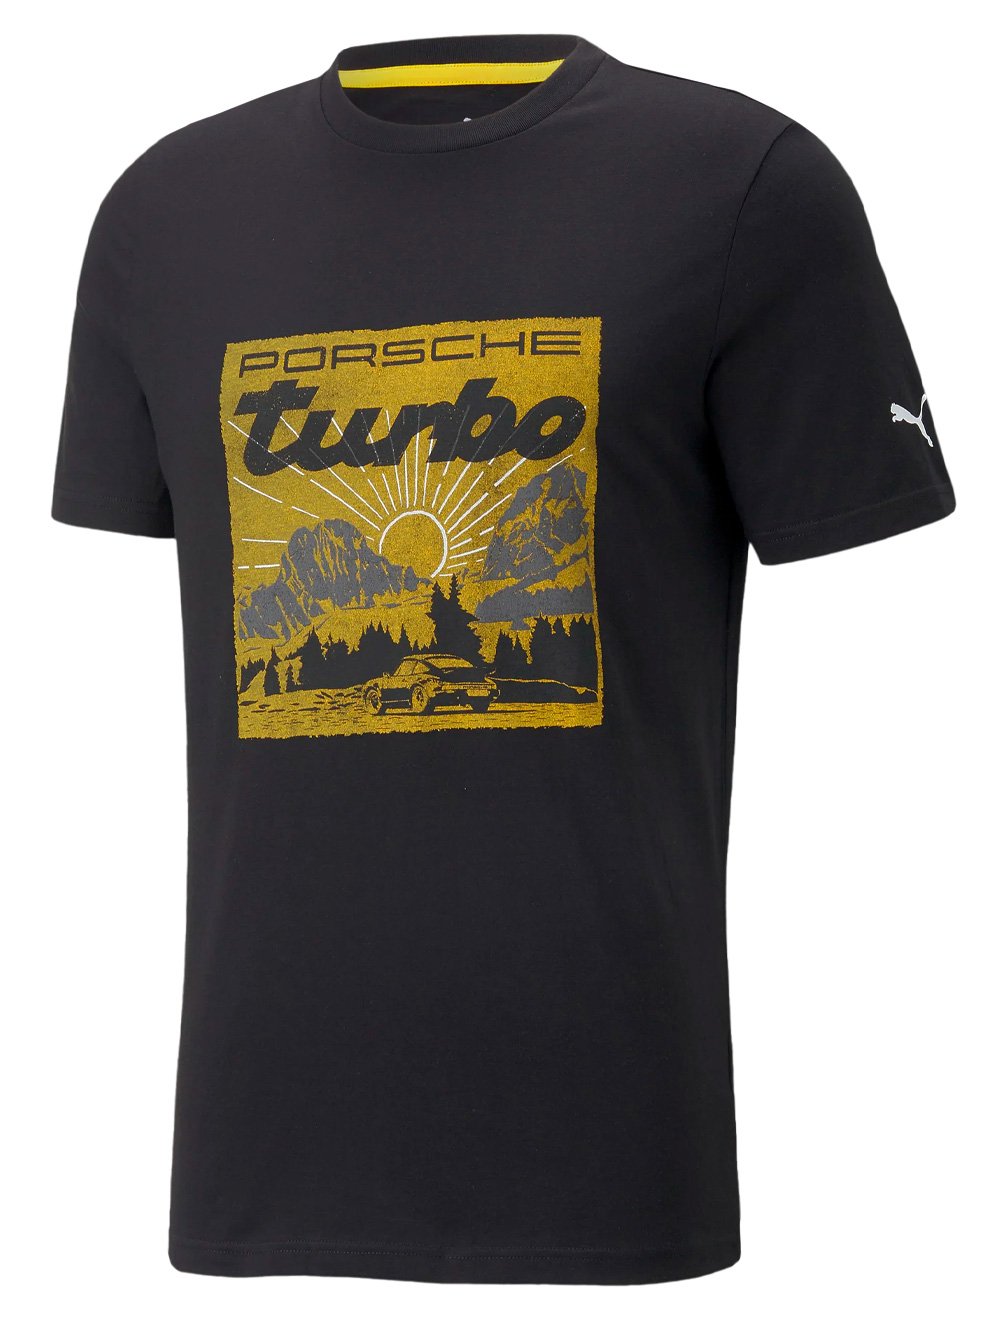 Camiseta Puma Masculina Porshe Legacy Graphic Tee Preta